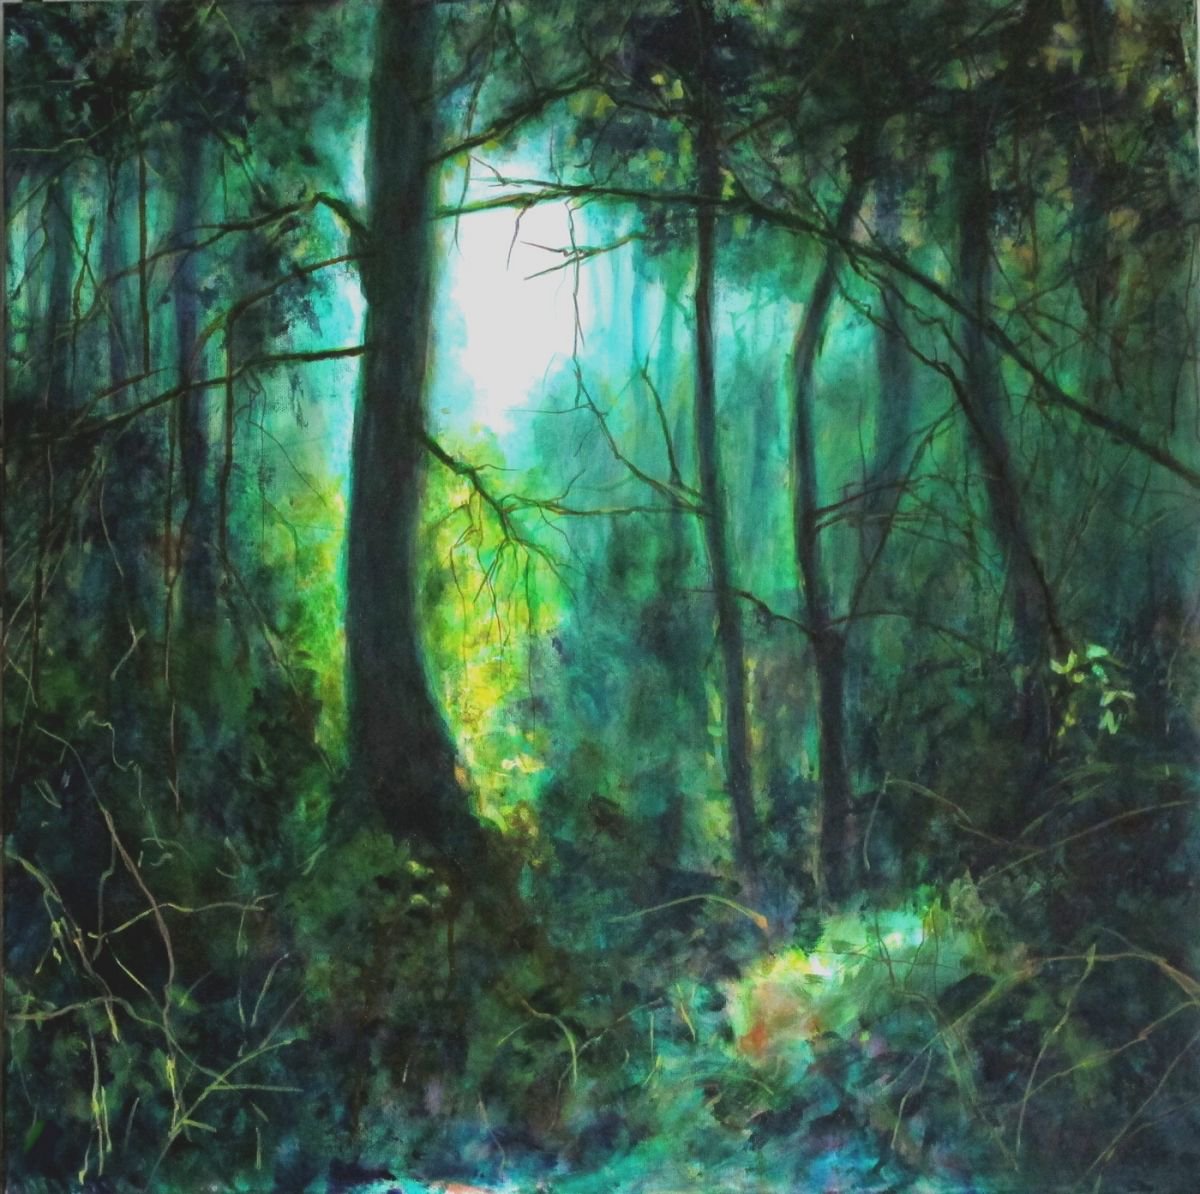 Forest - landscape - green - turquoise - teal - | Artfinder